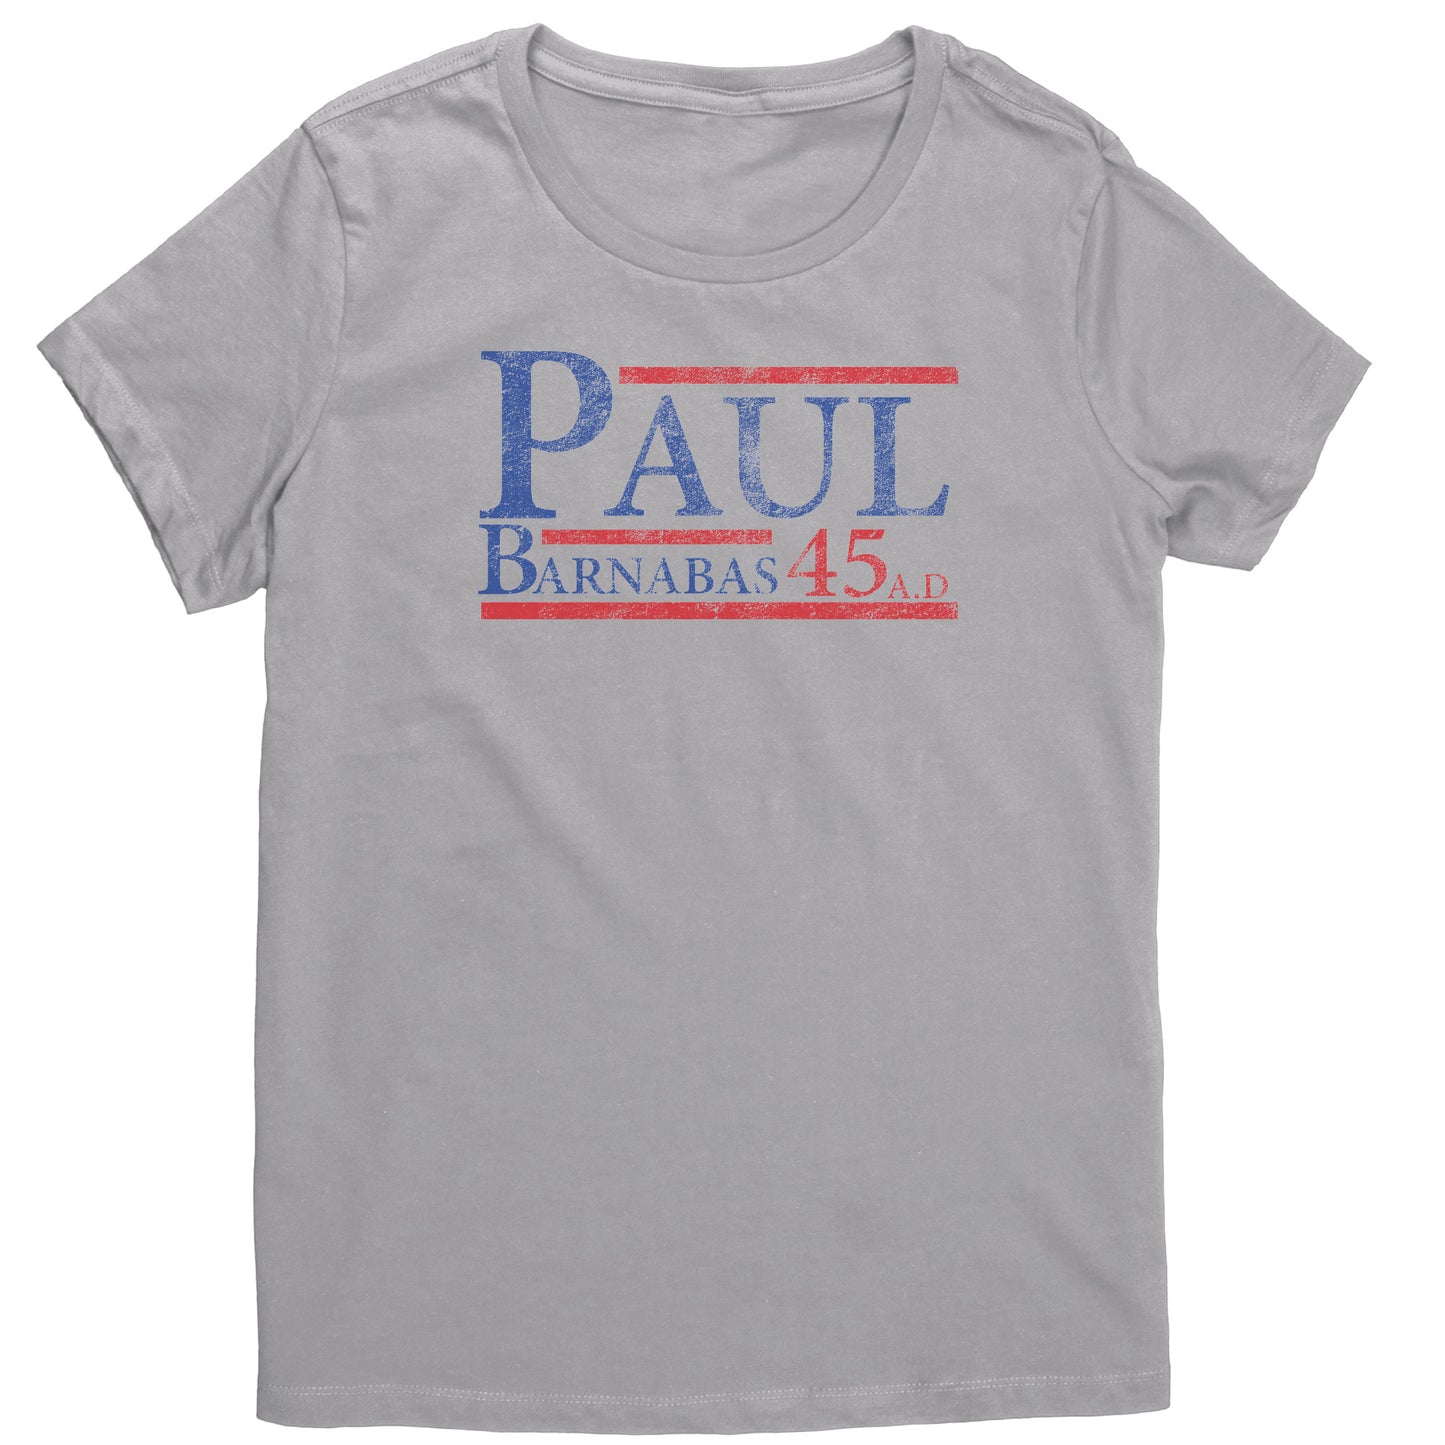 Paul/Barnabas 45A.D Women's T-Shirt